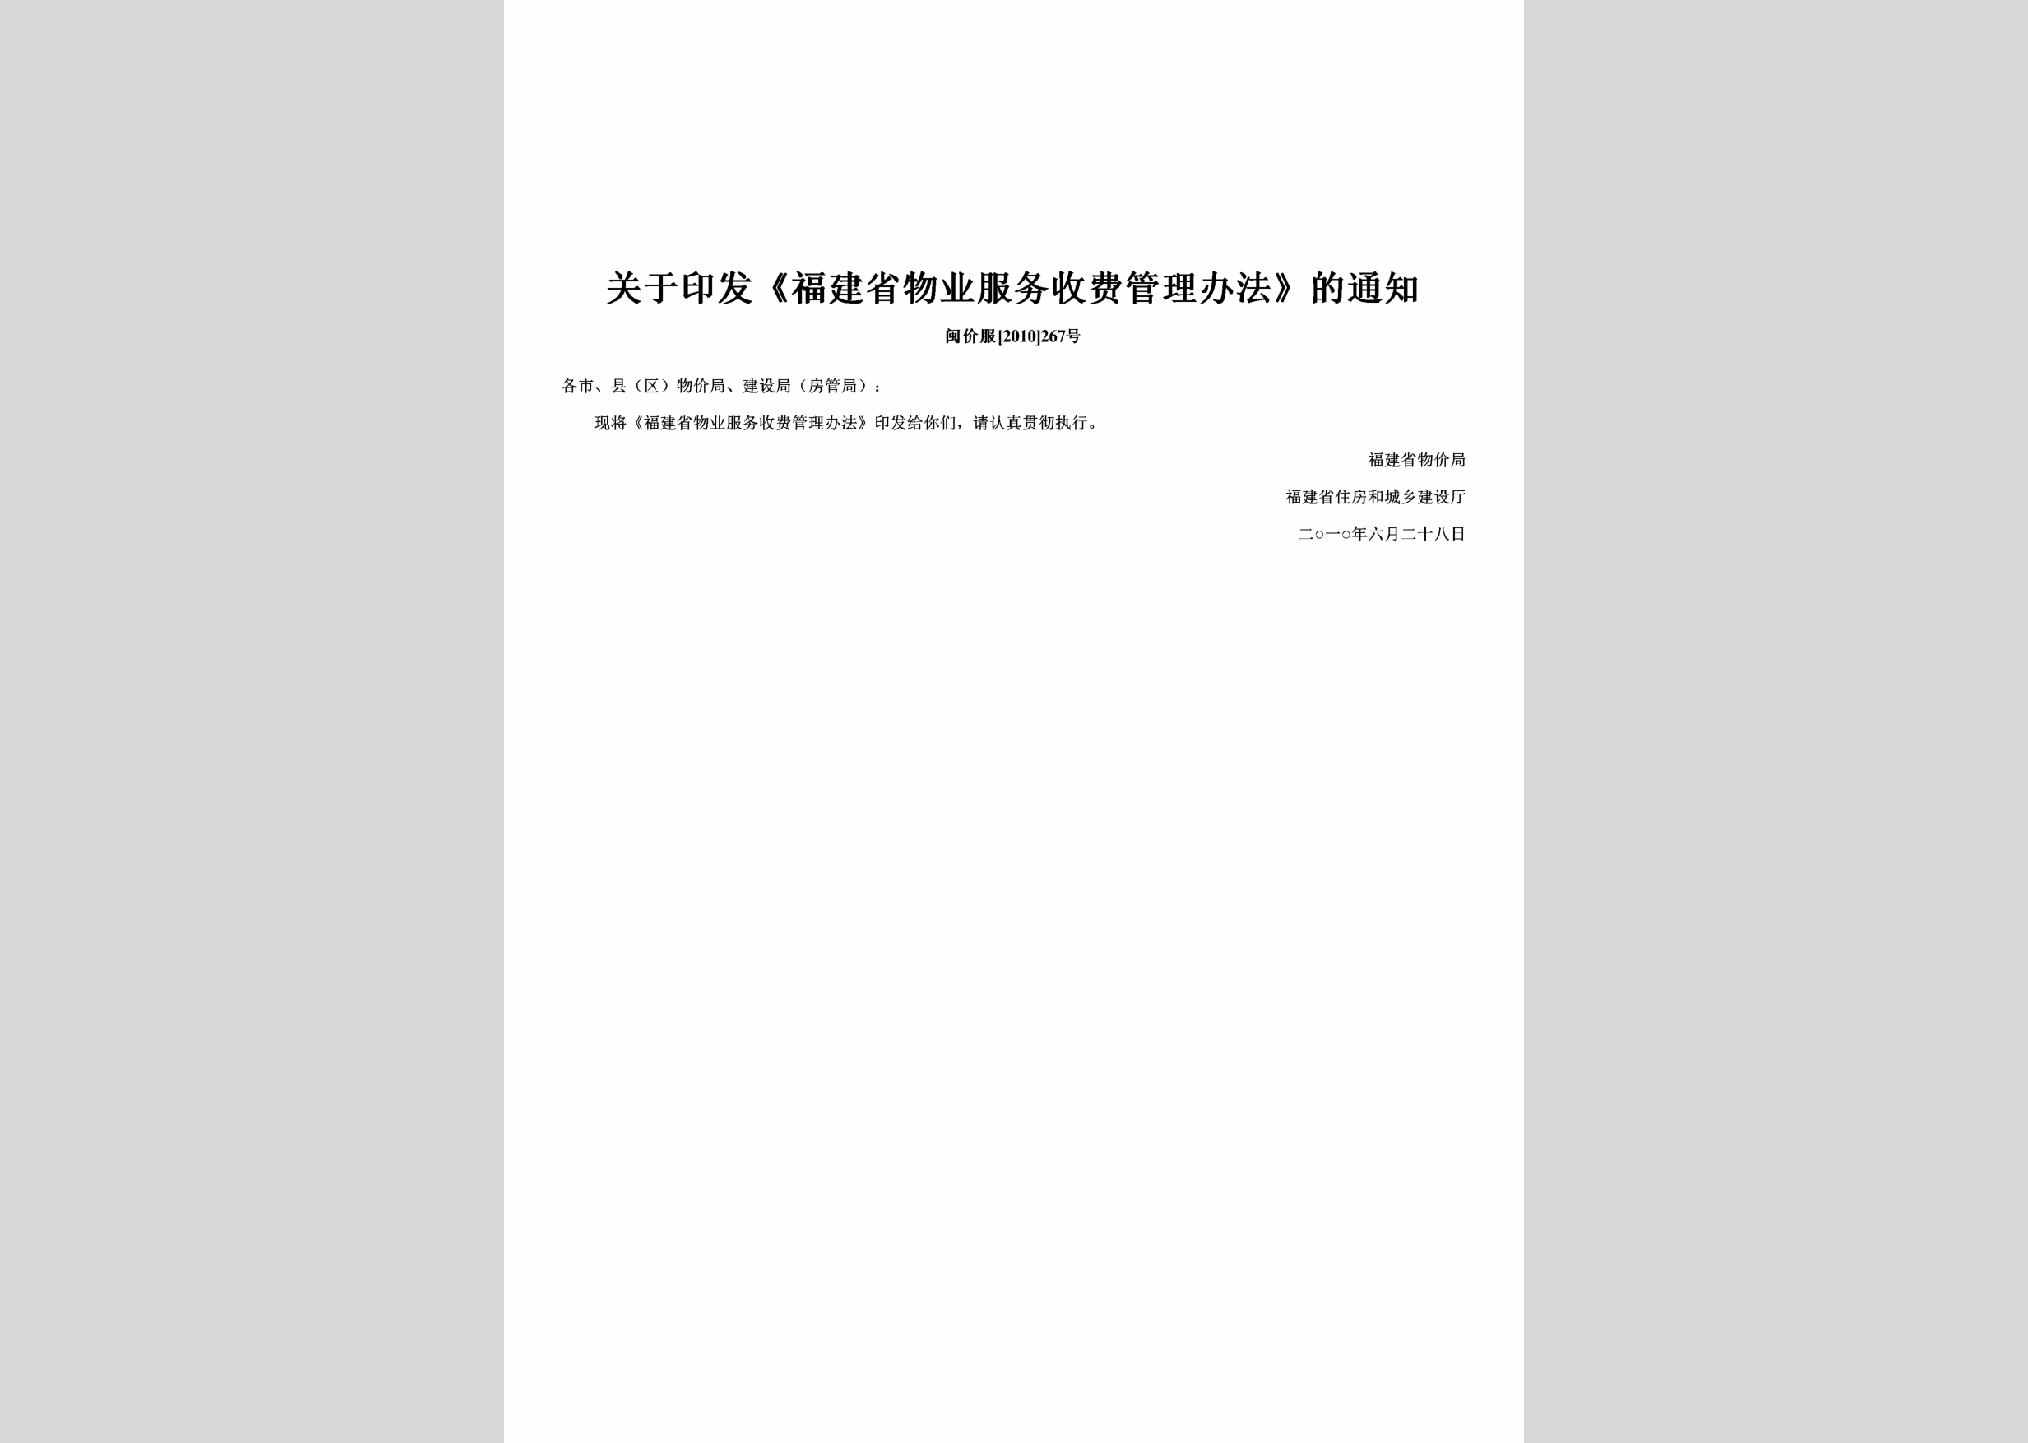 闽价服[2010]267号：关于印发《福建省物业服务收费管理办法》的通知